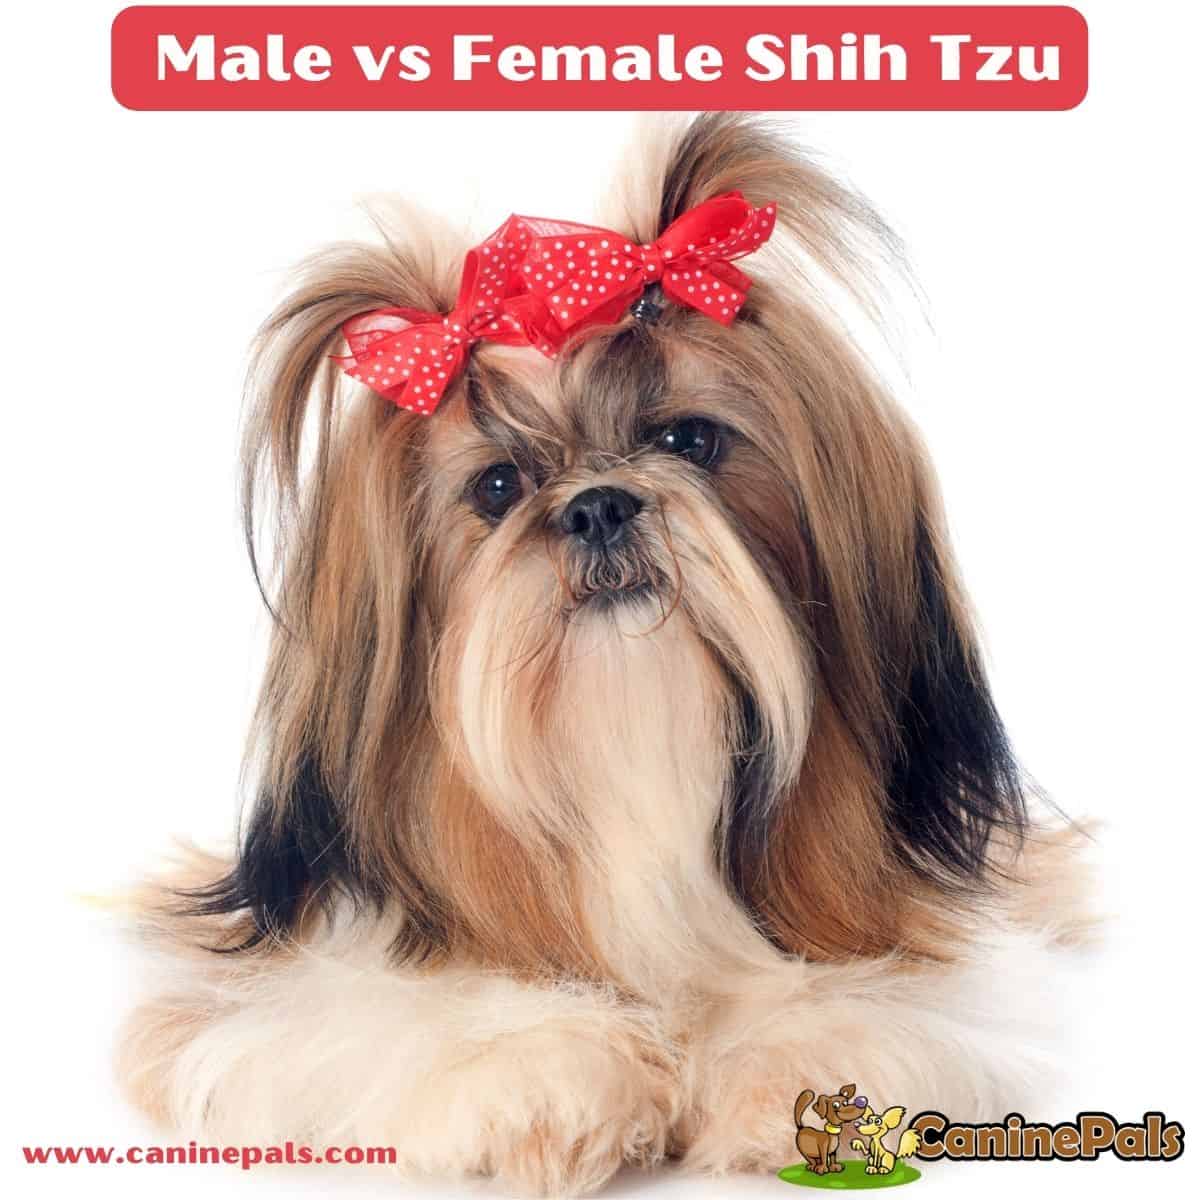 Male vs Female Shih Tzu